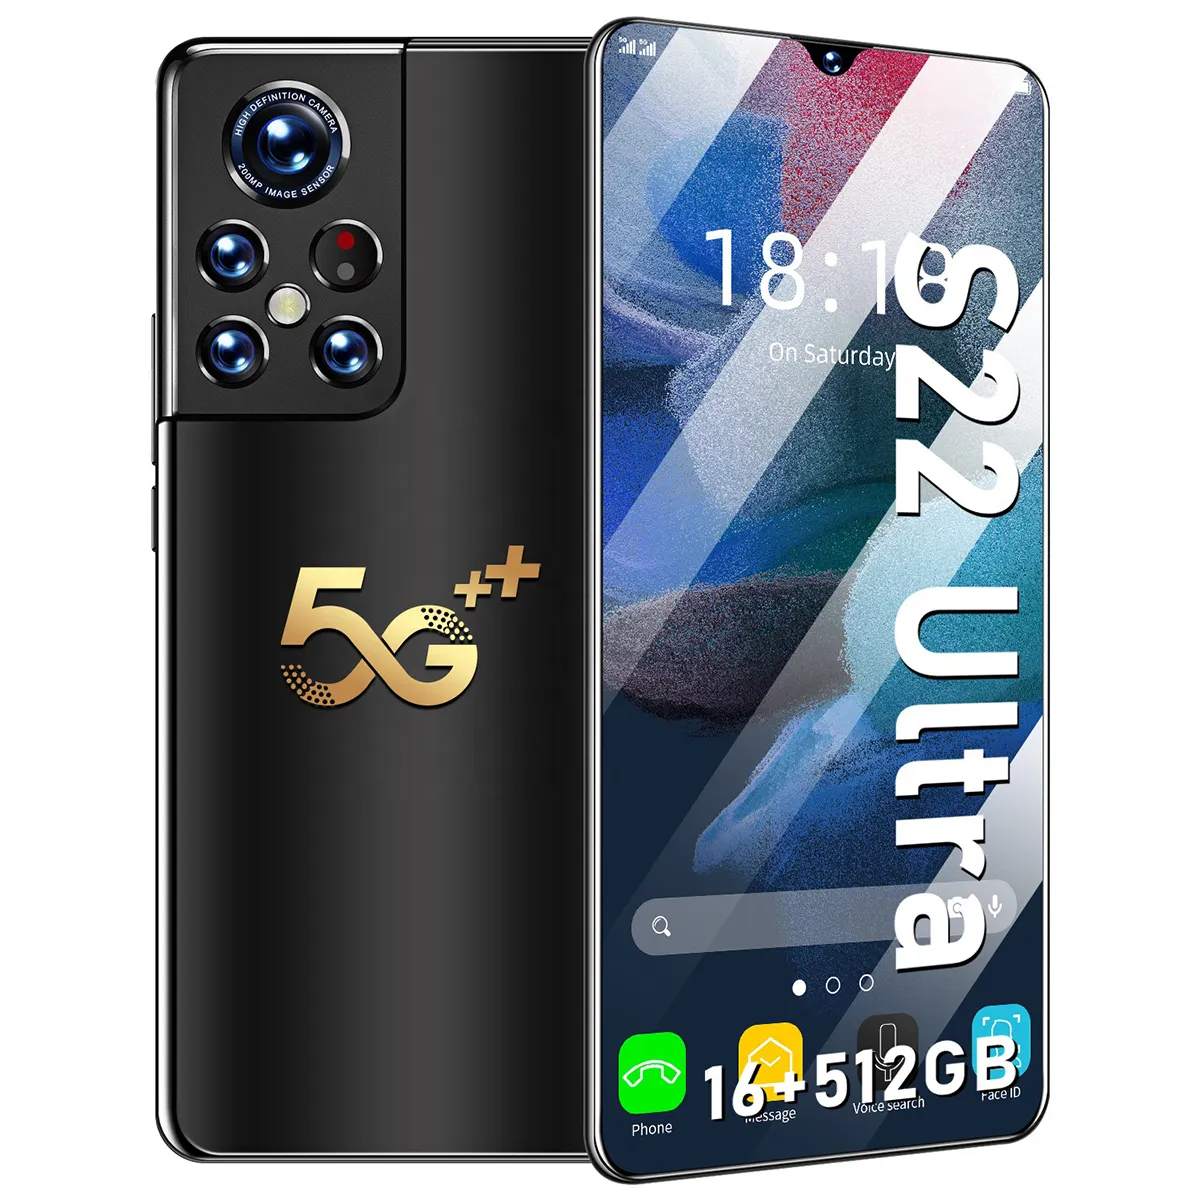 Smartphone S22 ultra s21 + pro, téléphone Mobile, Mini, 5G, 2e génération, bon marché, version internationale